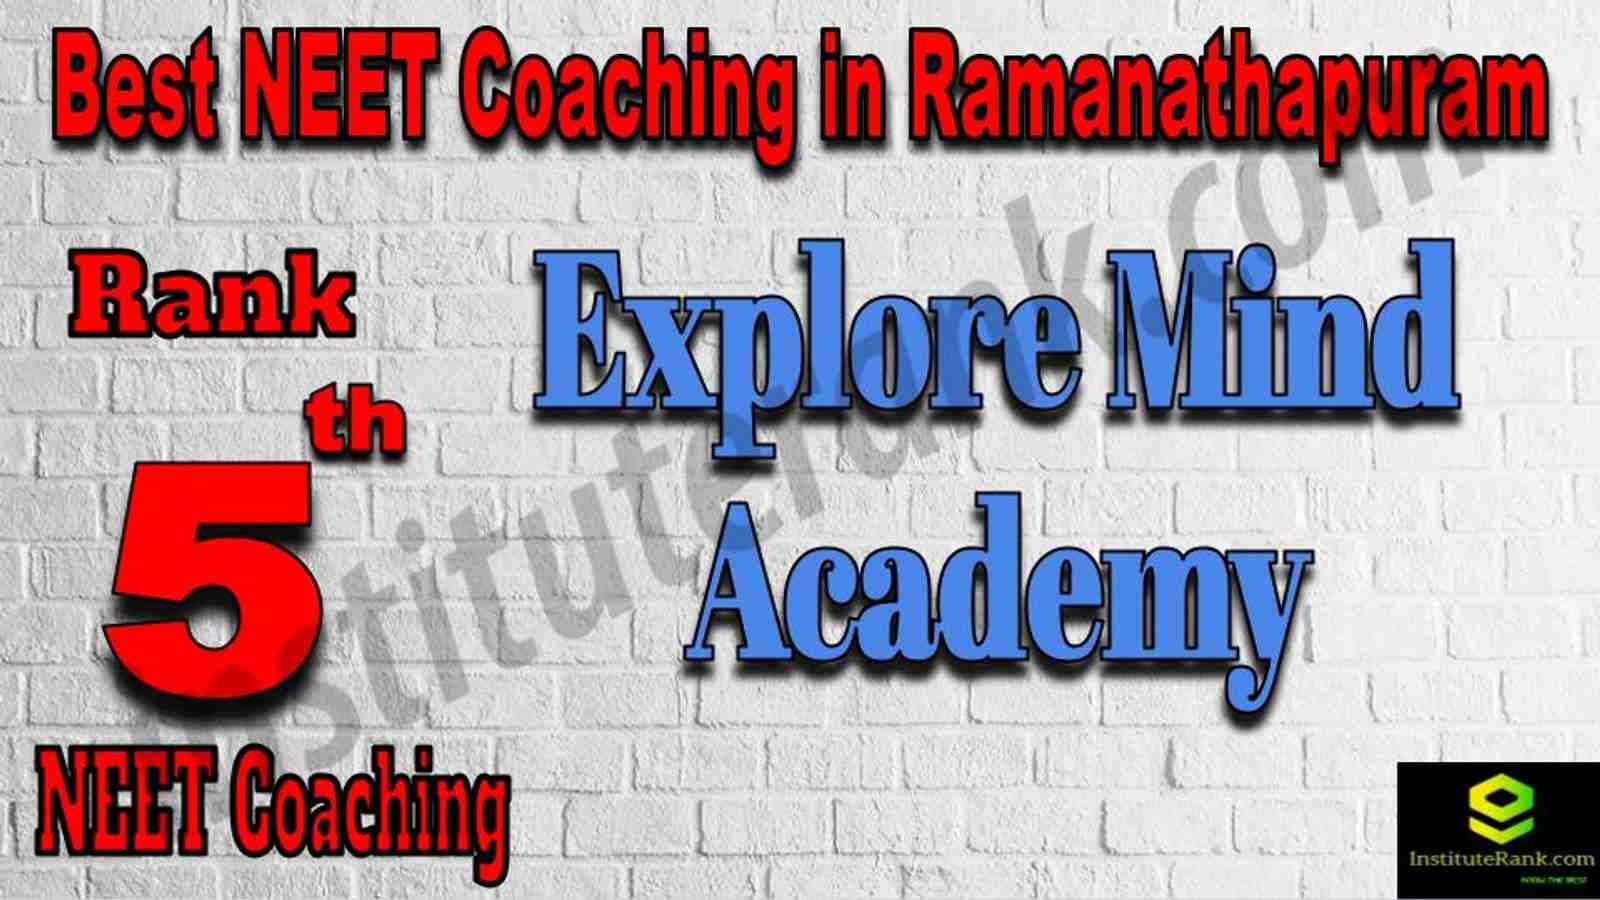 5th Best NEET Coaching in Ramanathapuram